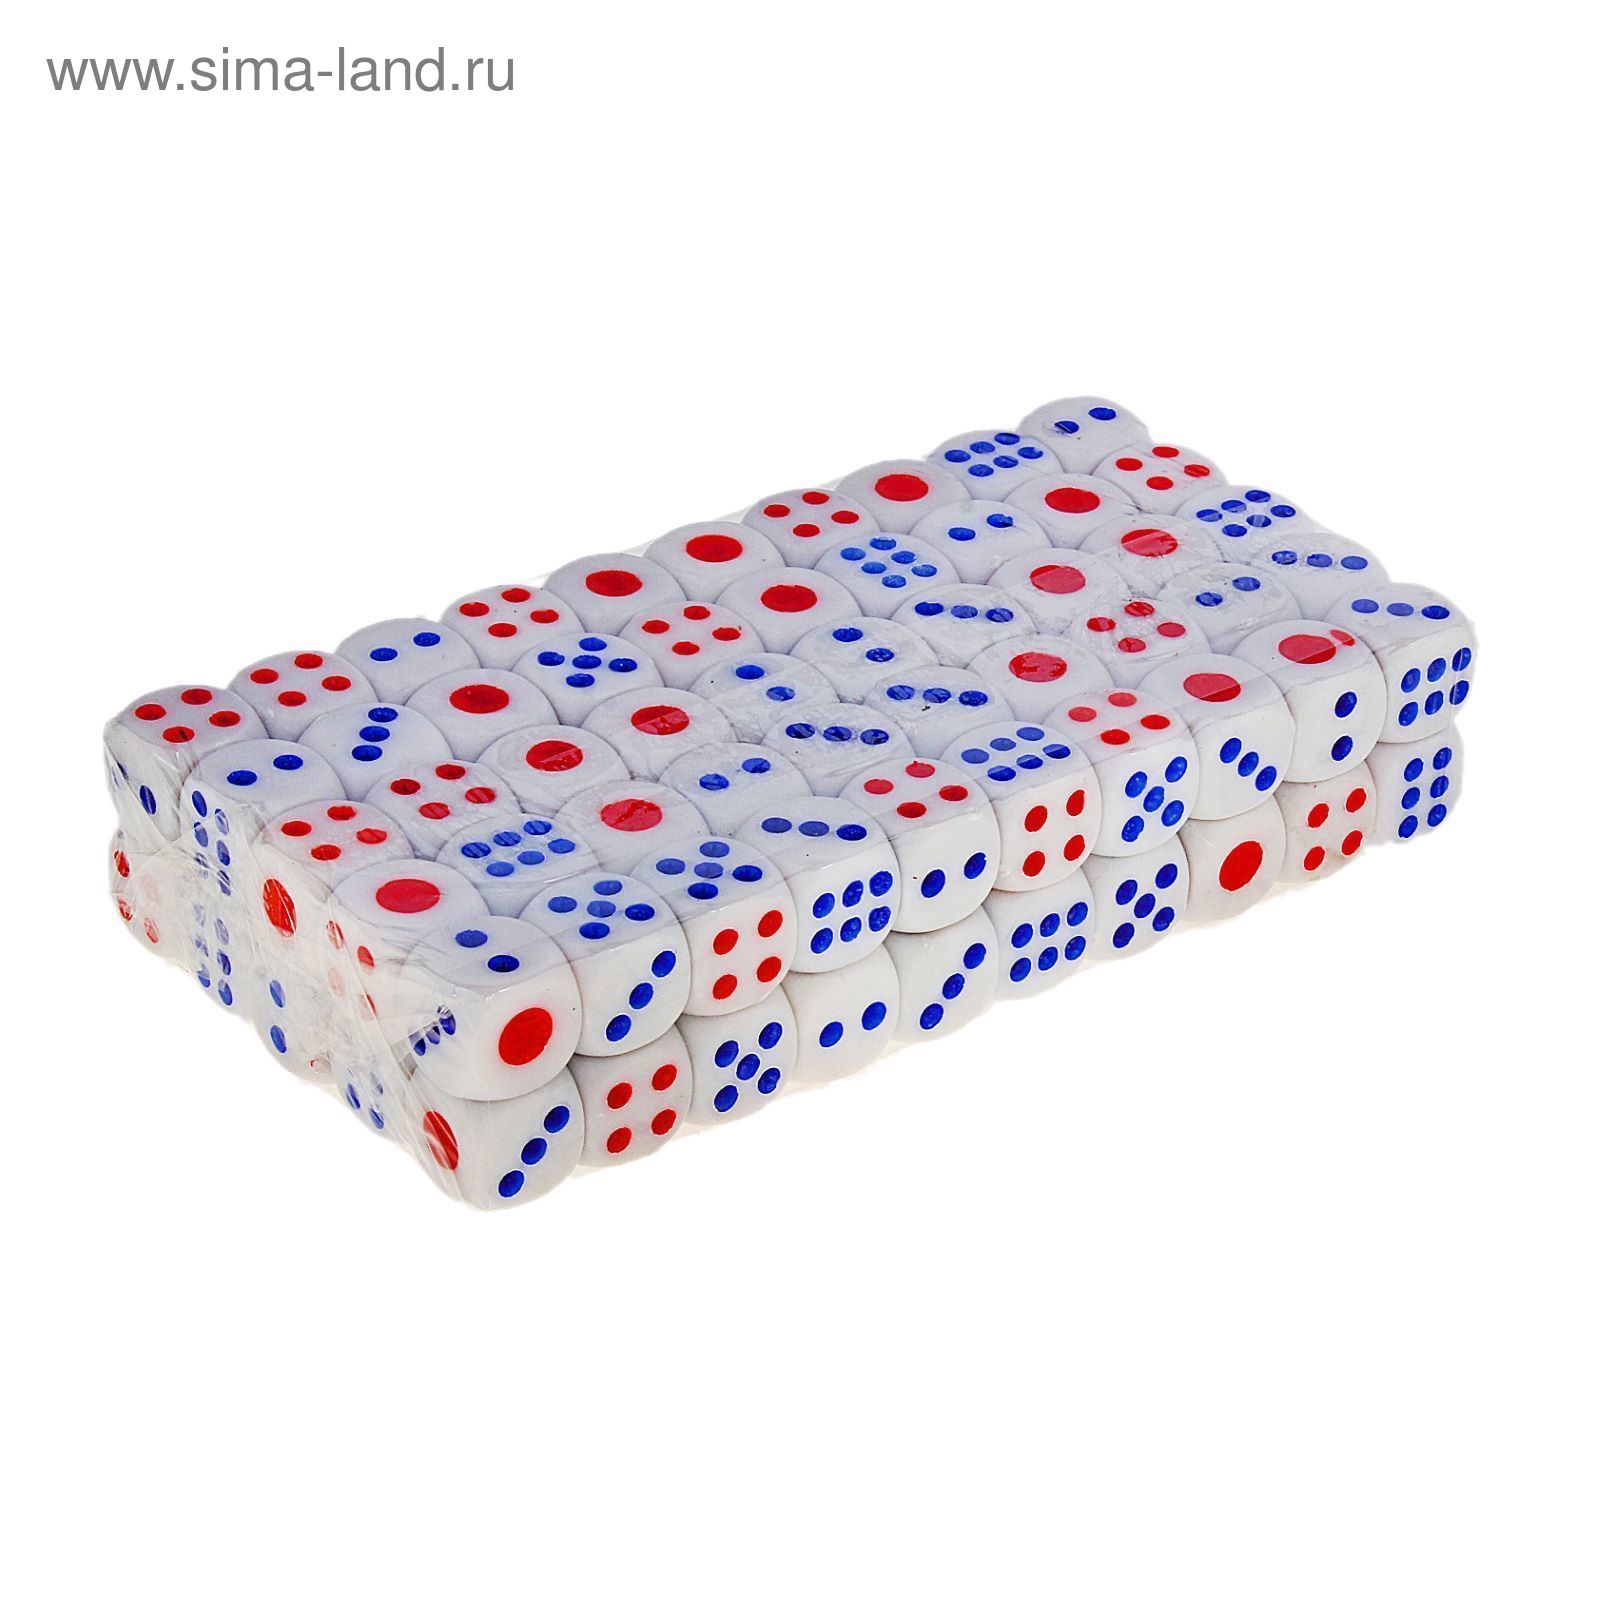 Кубики игральные 1,6 × 1,6 см, белые с цветными точками, фасовка 100 шт.